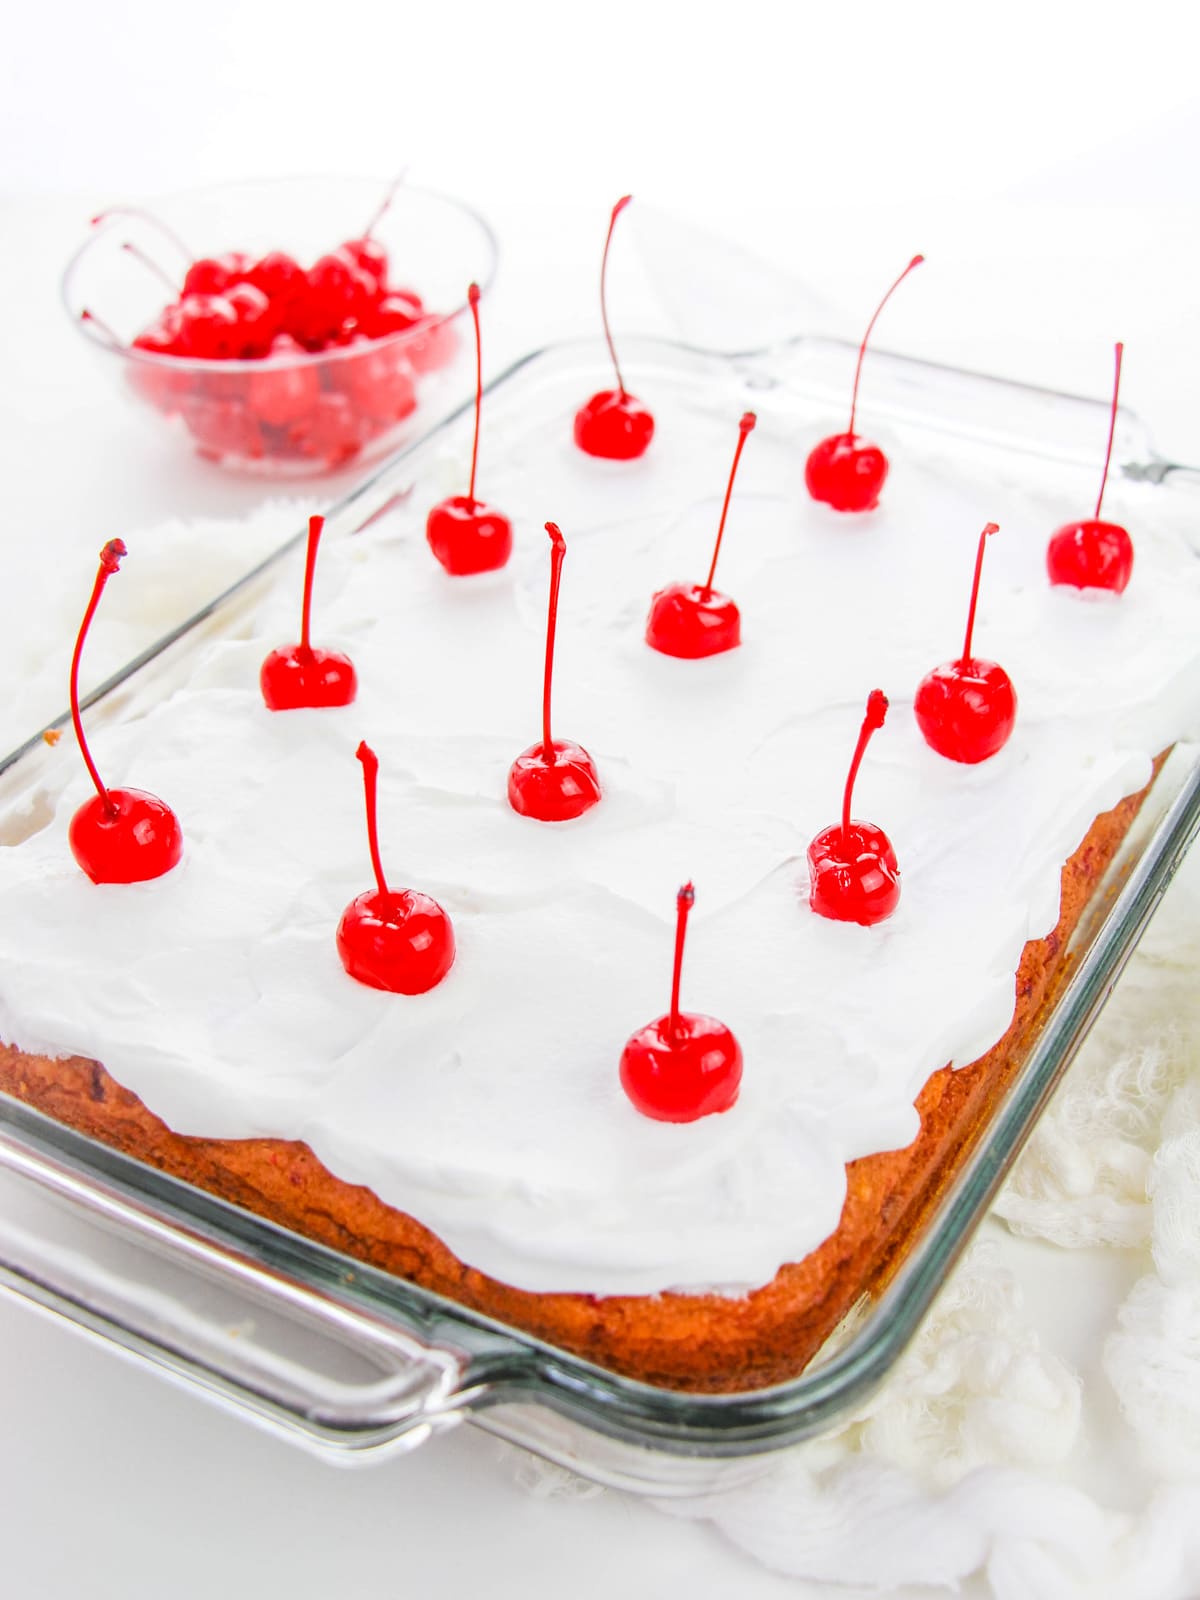 Top Cherry Cake with maraschino cherries